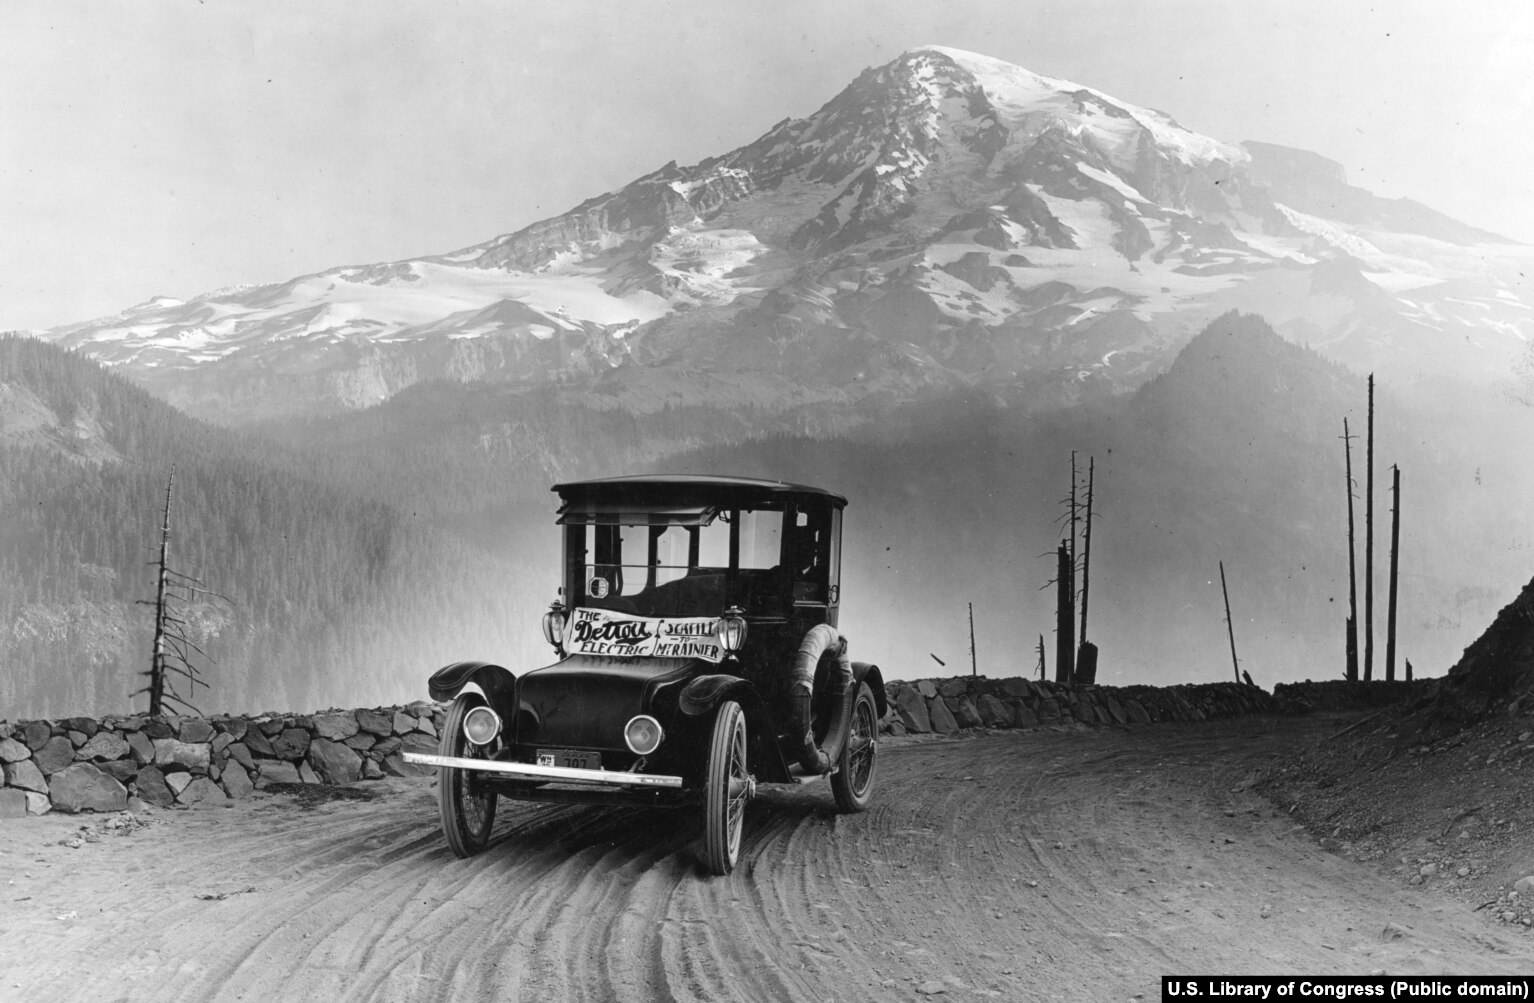 Një Detroit Electric në një rrugë përballë malit Rainer të Uashingtonit në vitin 1919. Vetura elektrike e hershme mund të udhëtonte deri rreth 130 kilometra, por lëvizte jashtëzakonisht ngadalë.